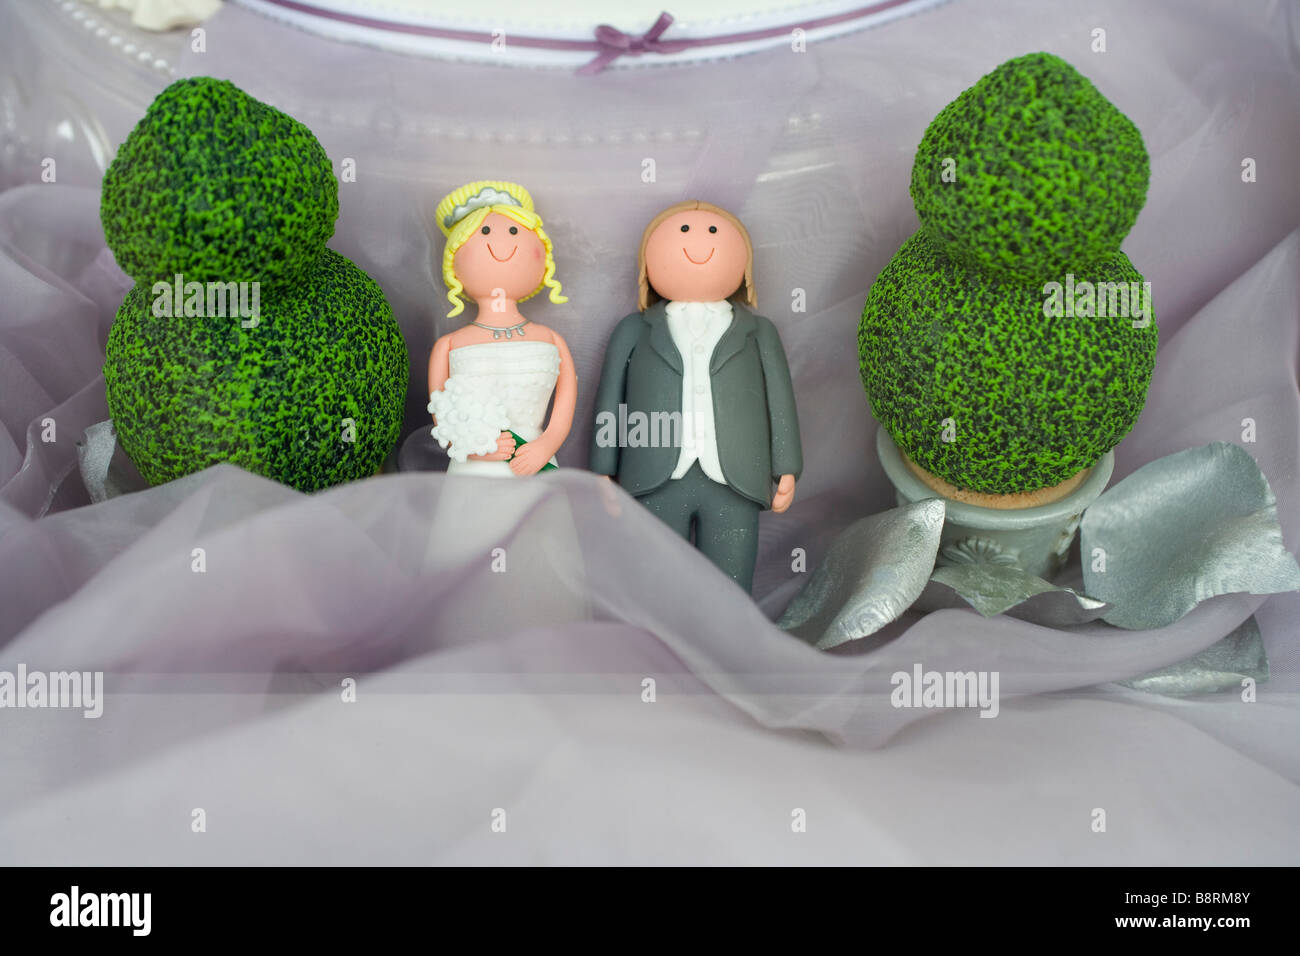 Gâteau de mariage avec petits personnages Banque D'Images